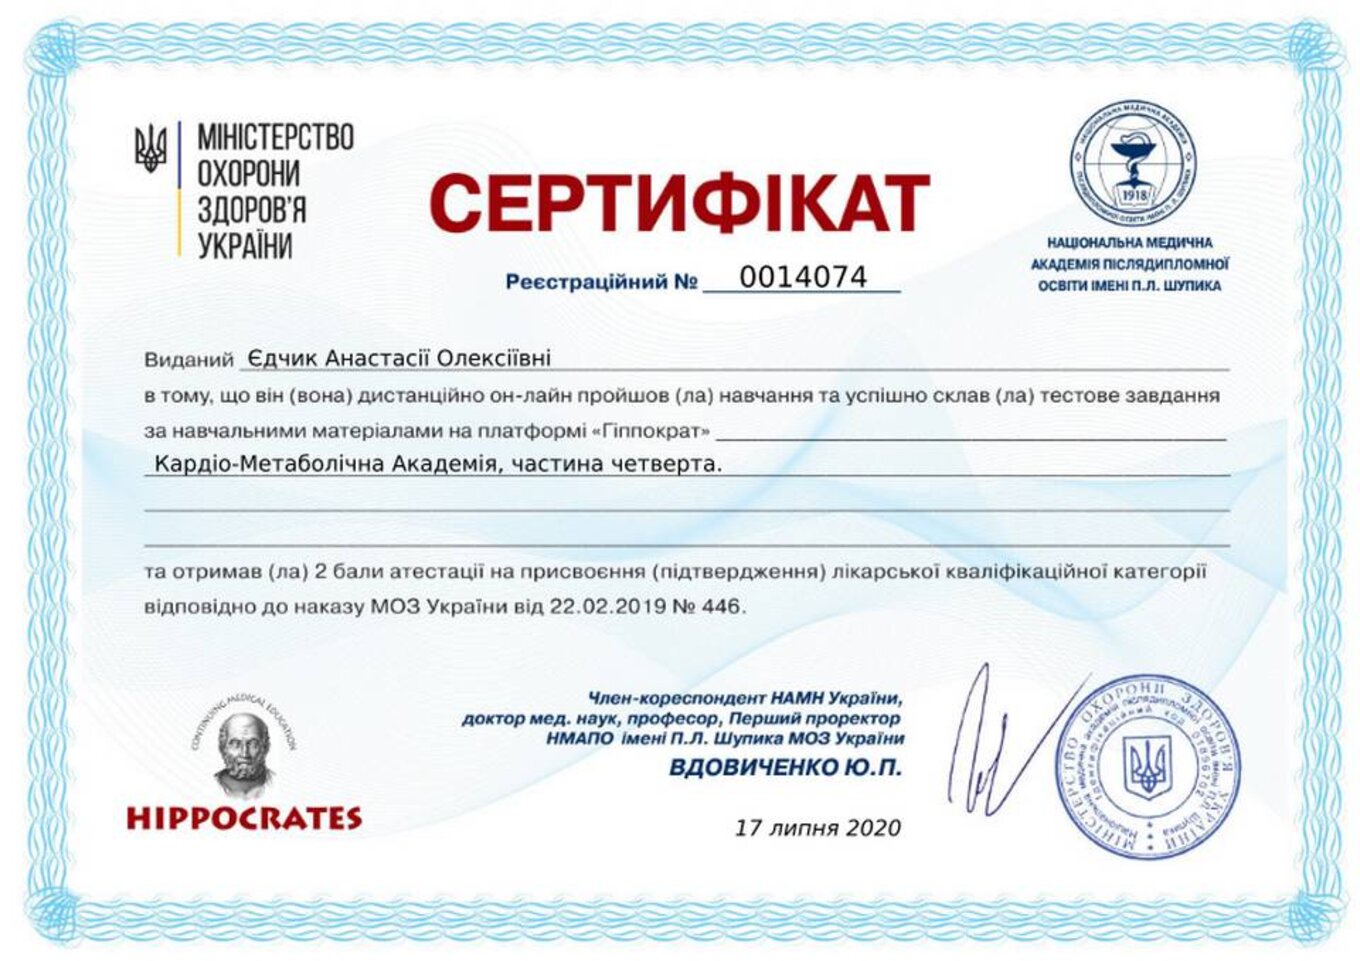 certificates/yedchik-anastasiya-oleksiyivna/erc-edchik-cert-64.jpg